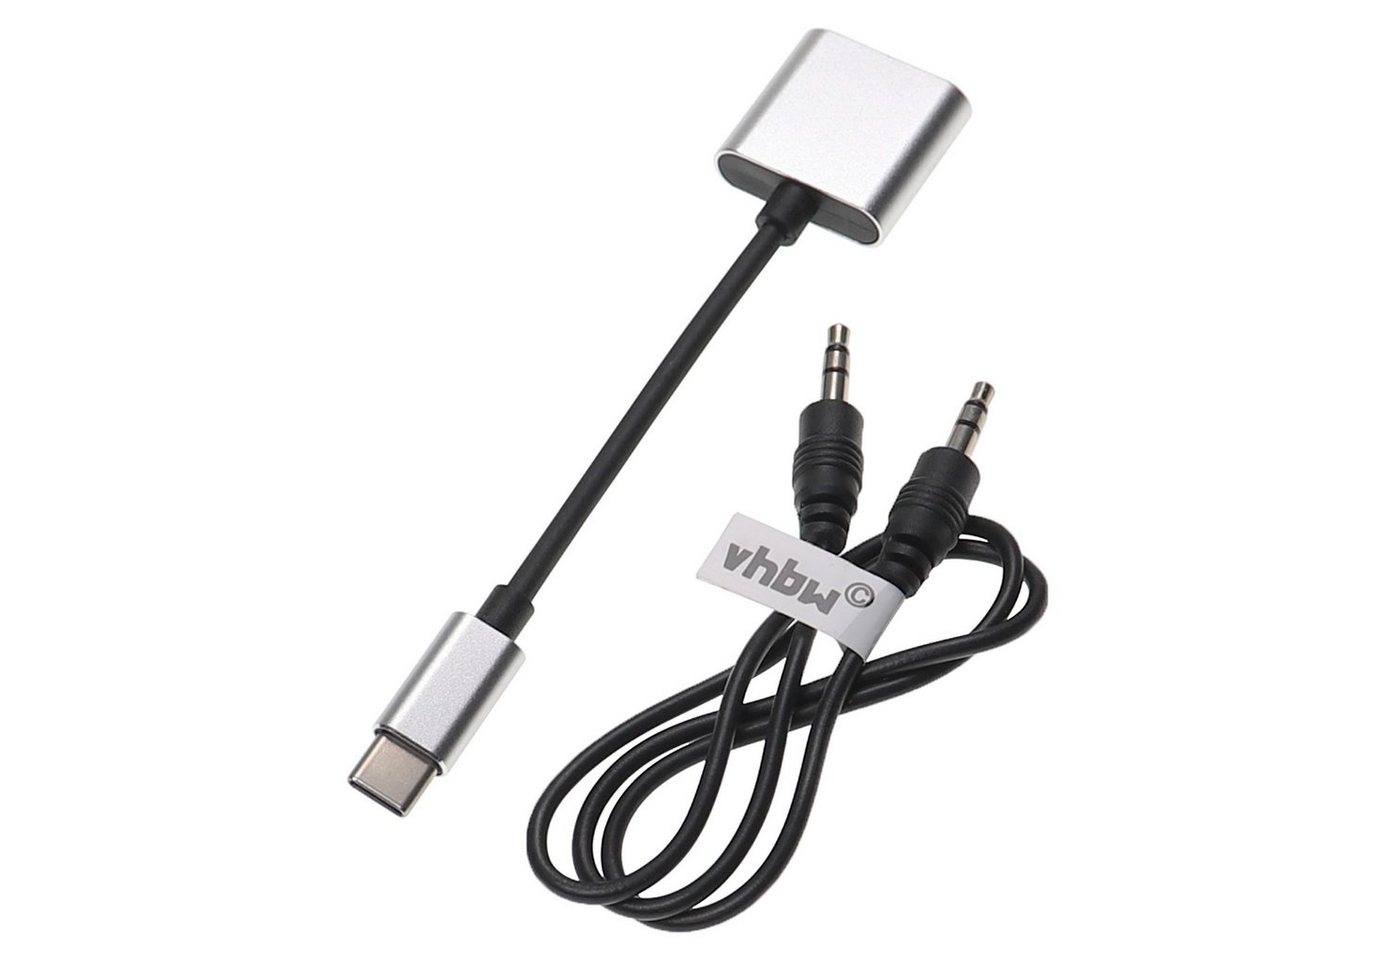 vhbw passend für Nubia Z17 mini, Z17 Kopfhörer / Smartphone / Mobilfunk USB-Adapter von vhbw